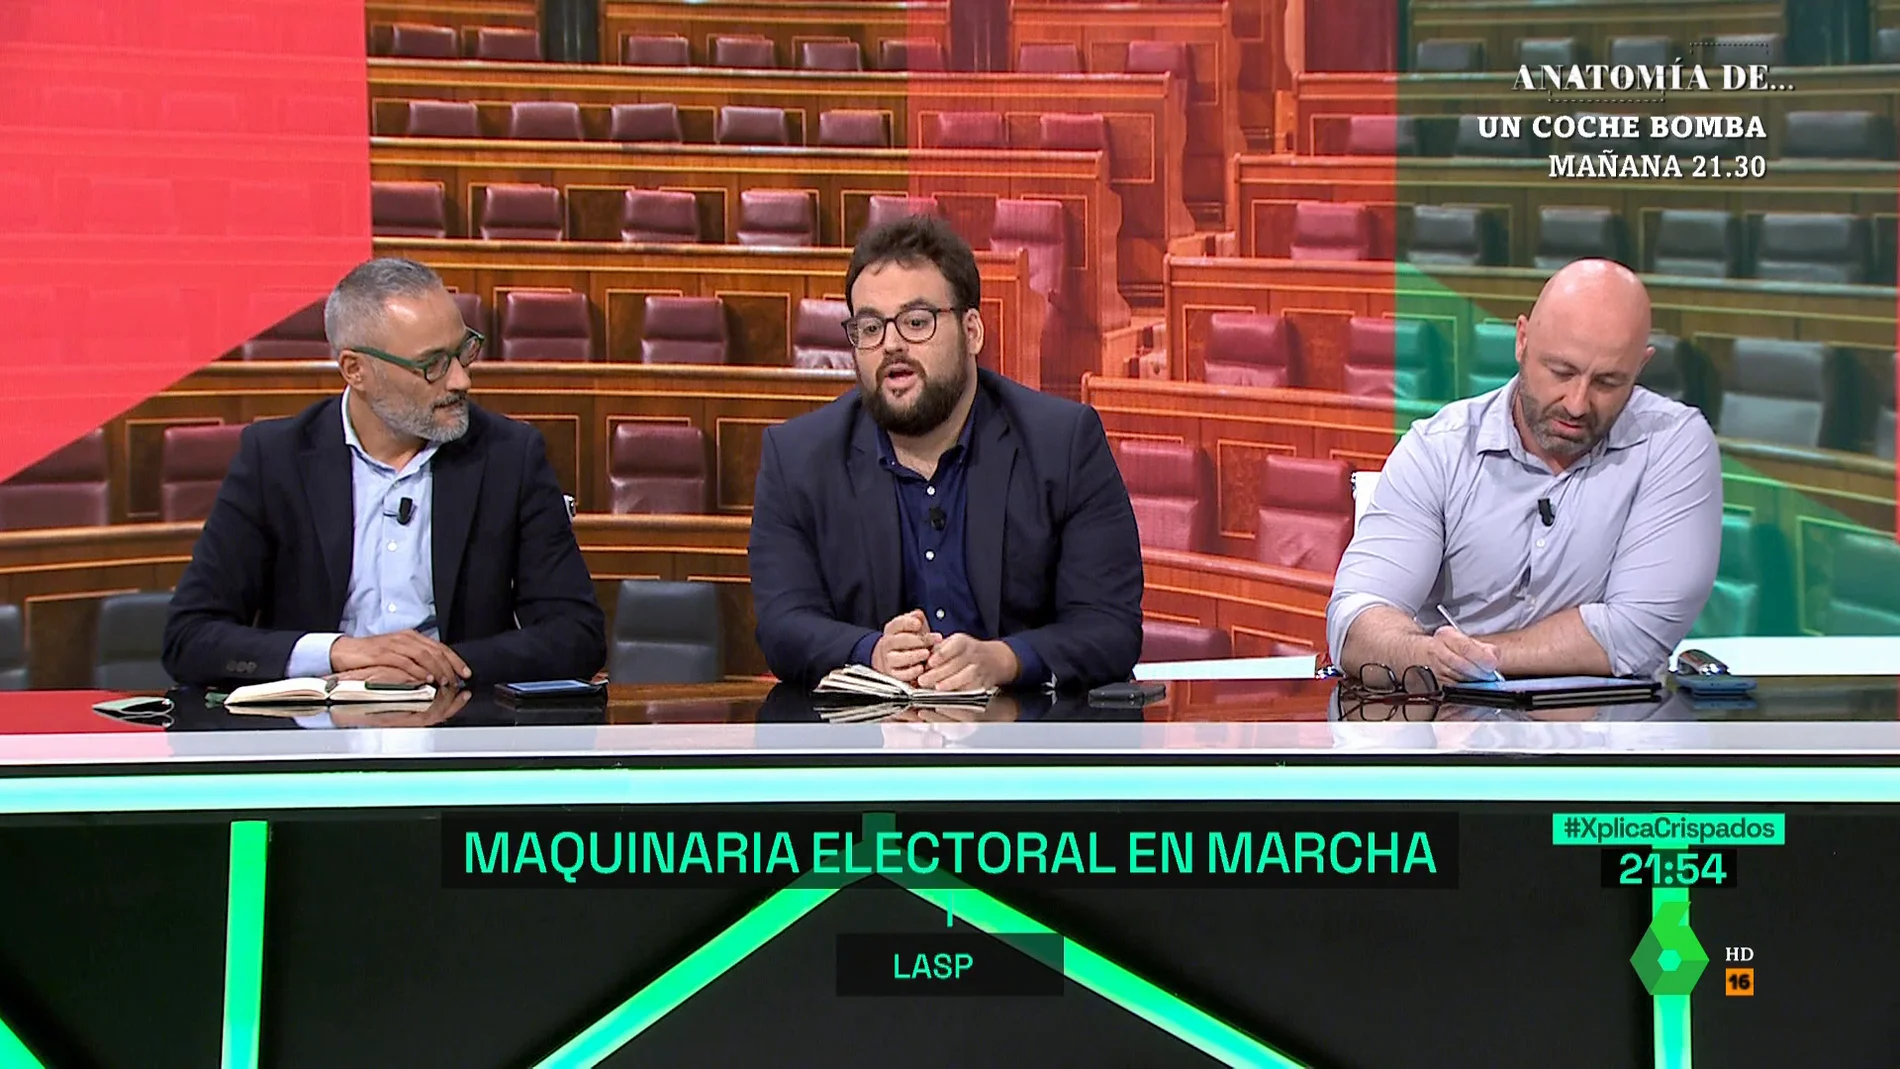 Monrosi señala la existencia de un "relato con voceros y altavoces" contra Sánchez como la causa del resultado el 28M